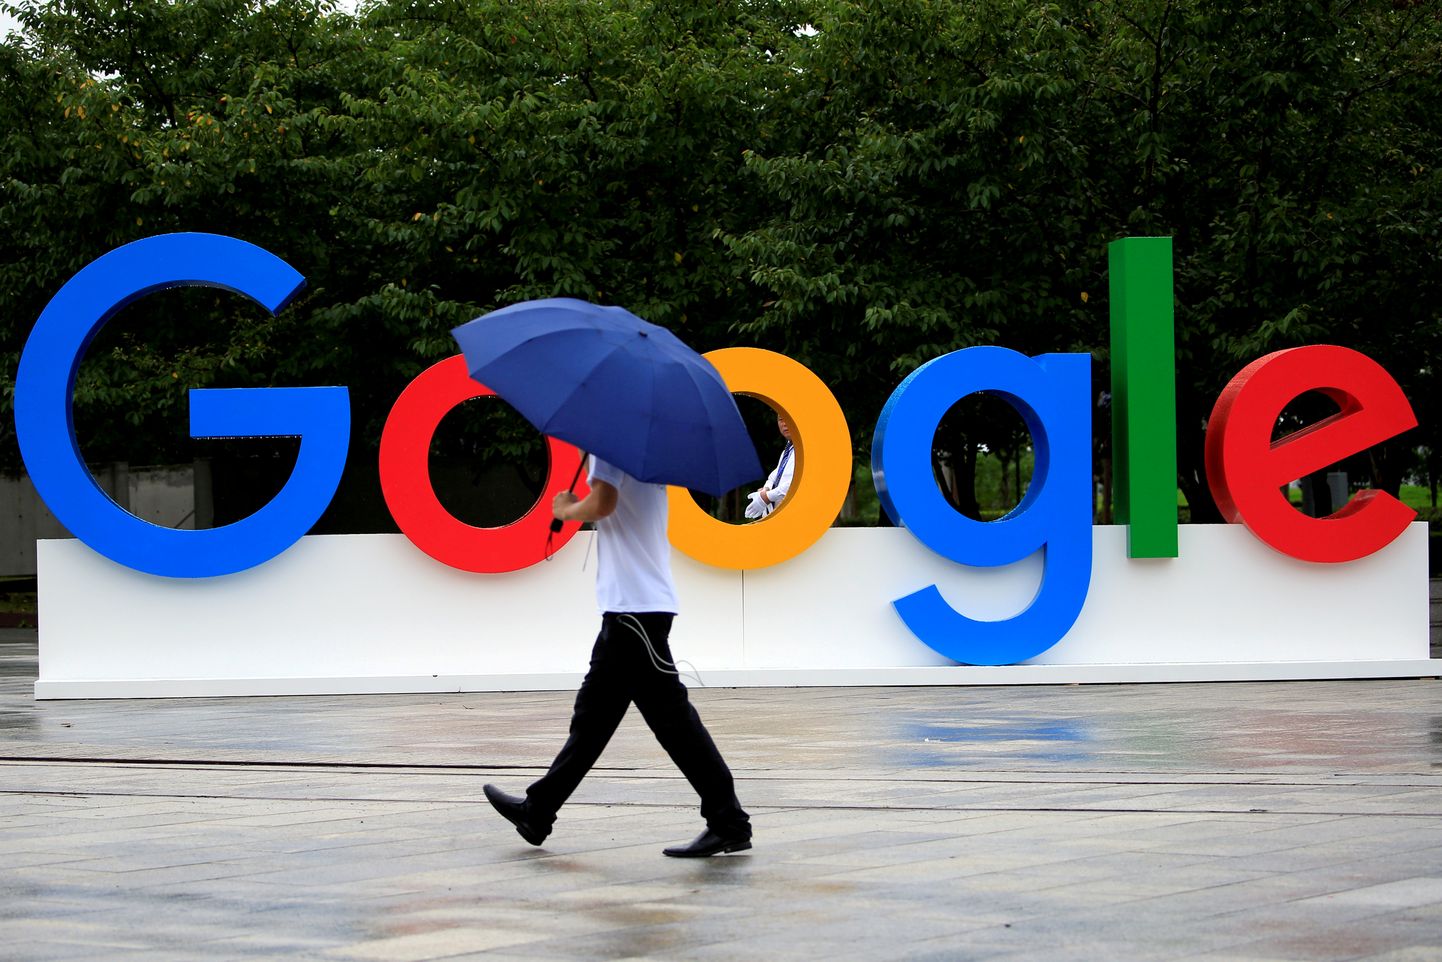 Prantsuse meediaorganisatsioonid esitasid kolmapäeval riigi konkurentsiametile kaebuse USA tehnoloogiafirma Google vastu, sest Google keeldub neile maksmast nende sisu näitamise eest.